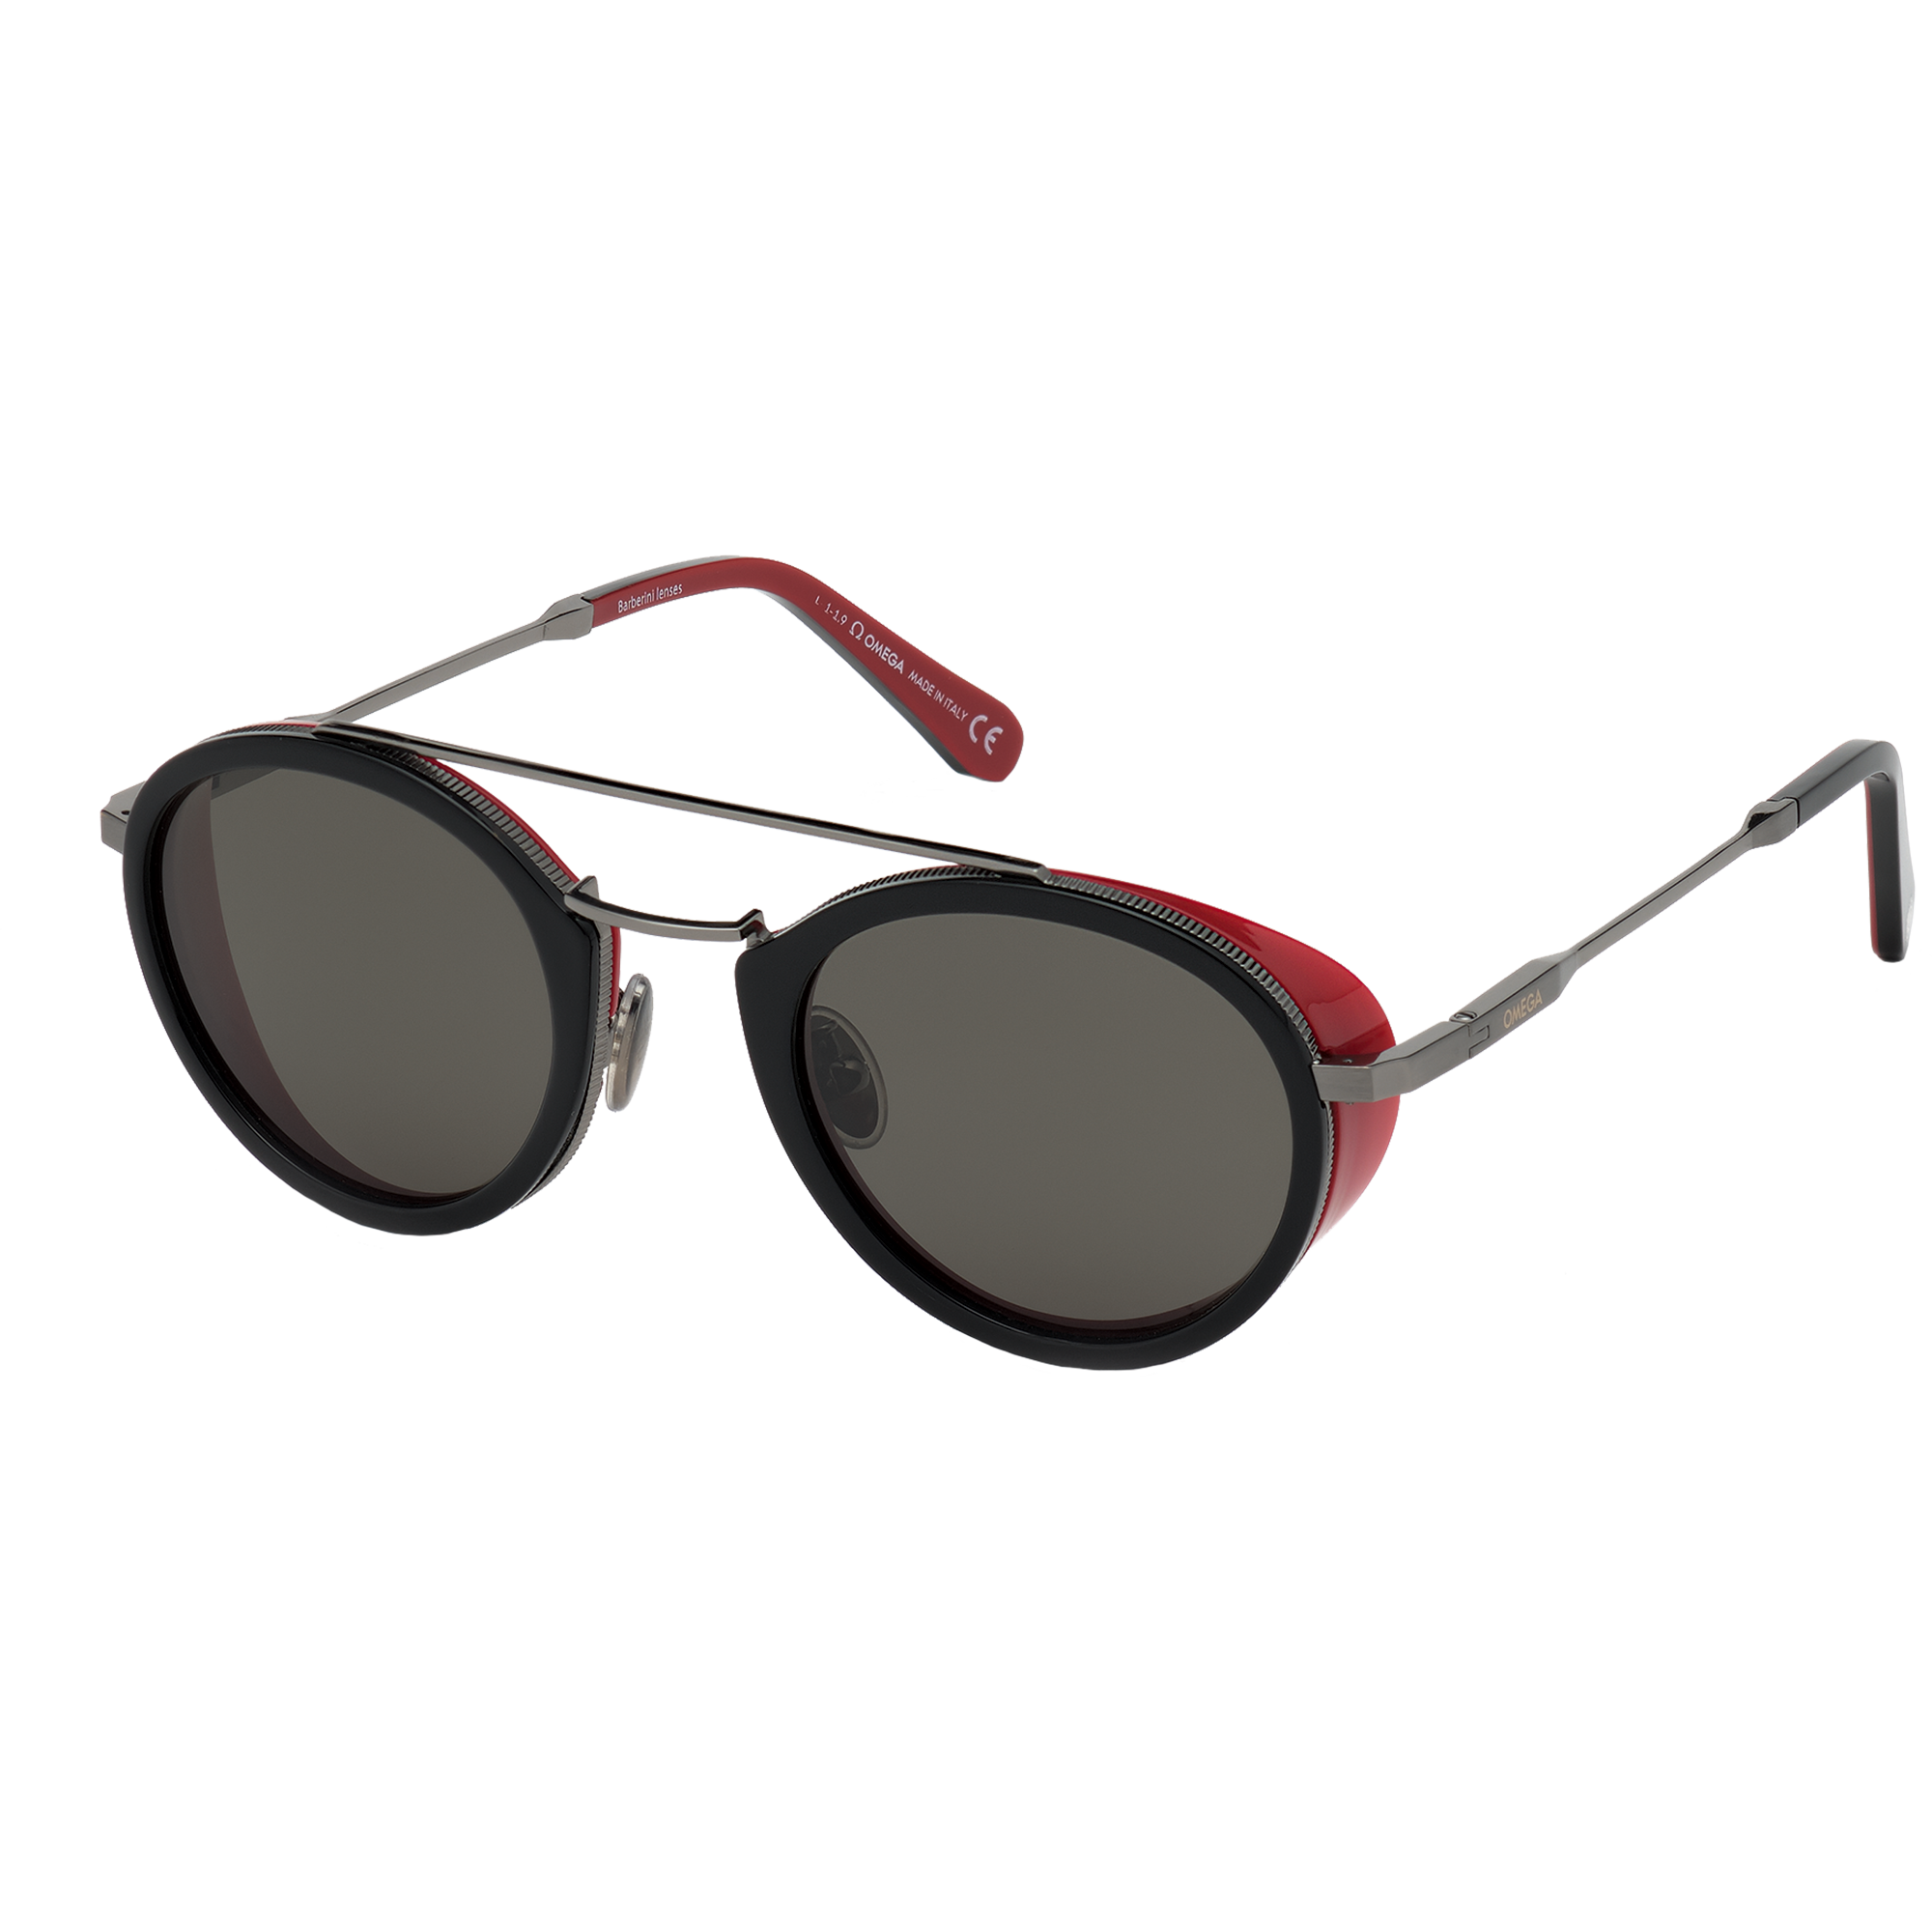 Óculos de Sol - Estilo redondo, Unissexo - OM0021-H5205D